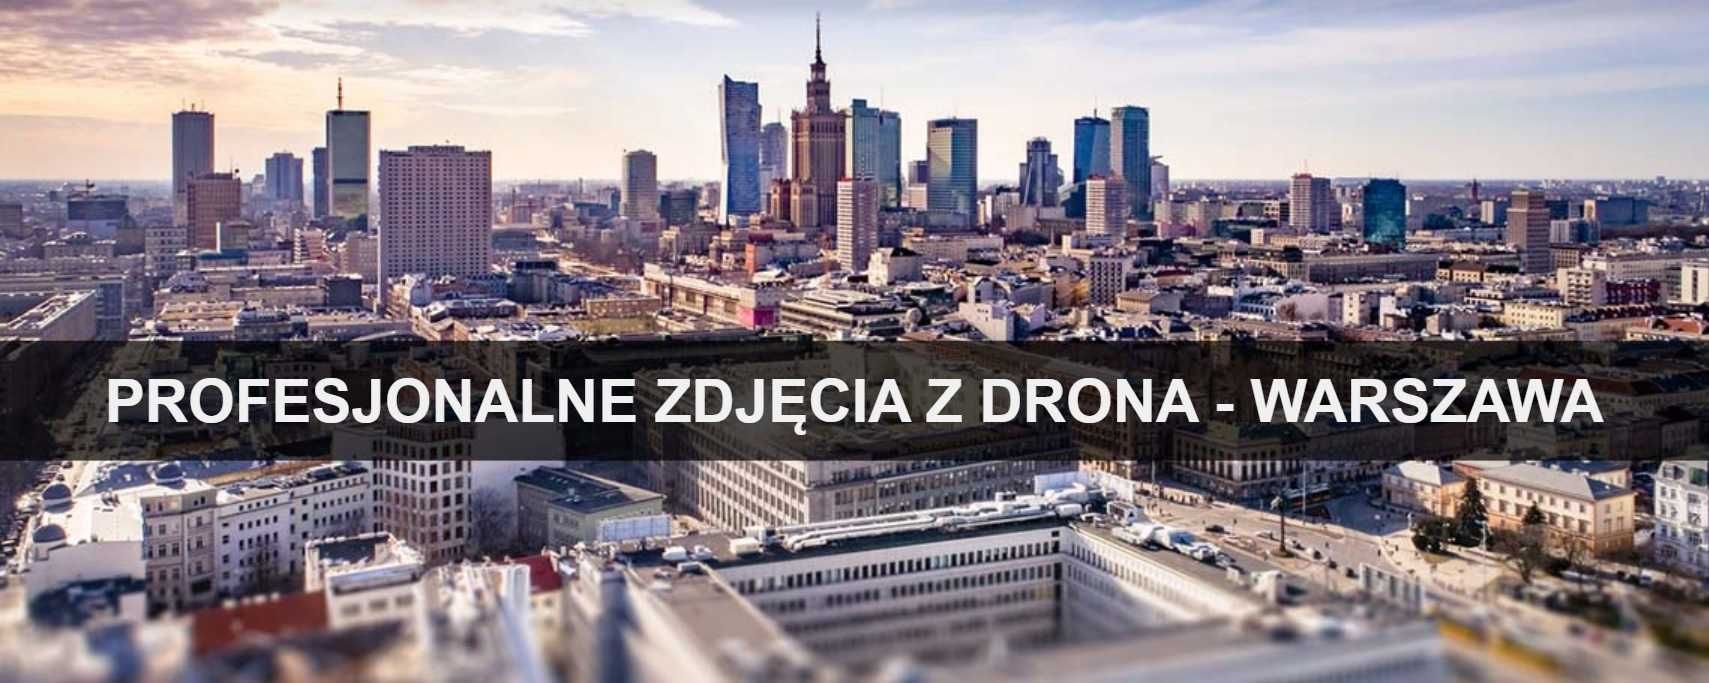 Zdjęcia z drona Warszawa - usługi dronem - filmy z drona